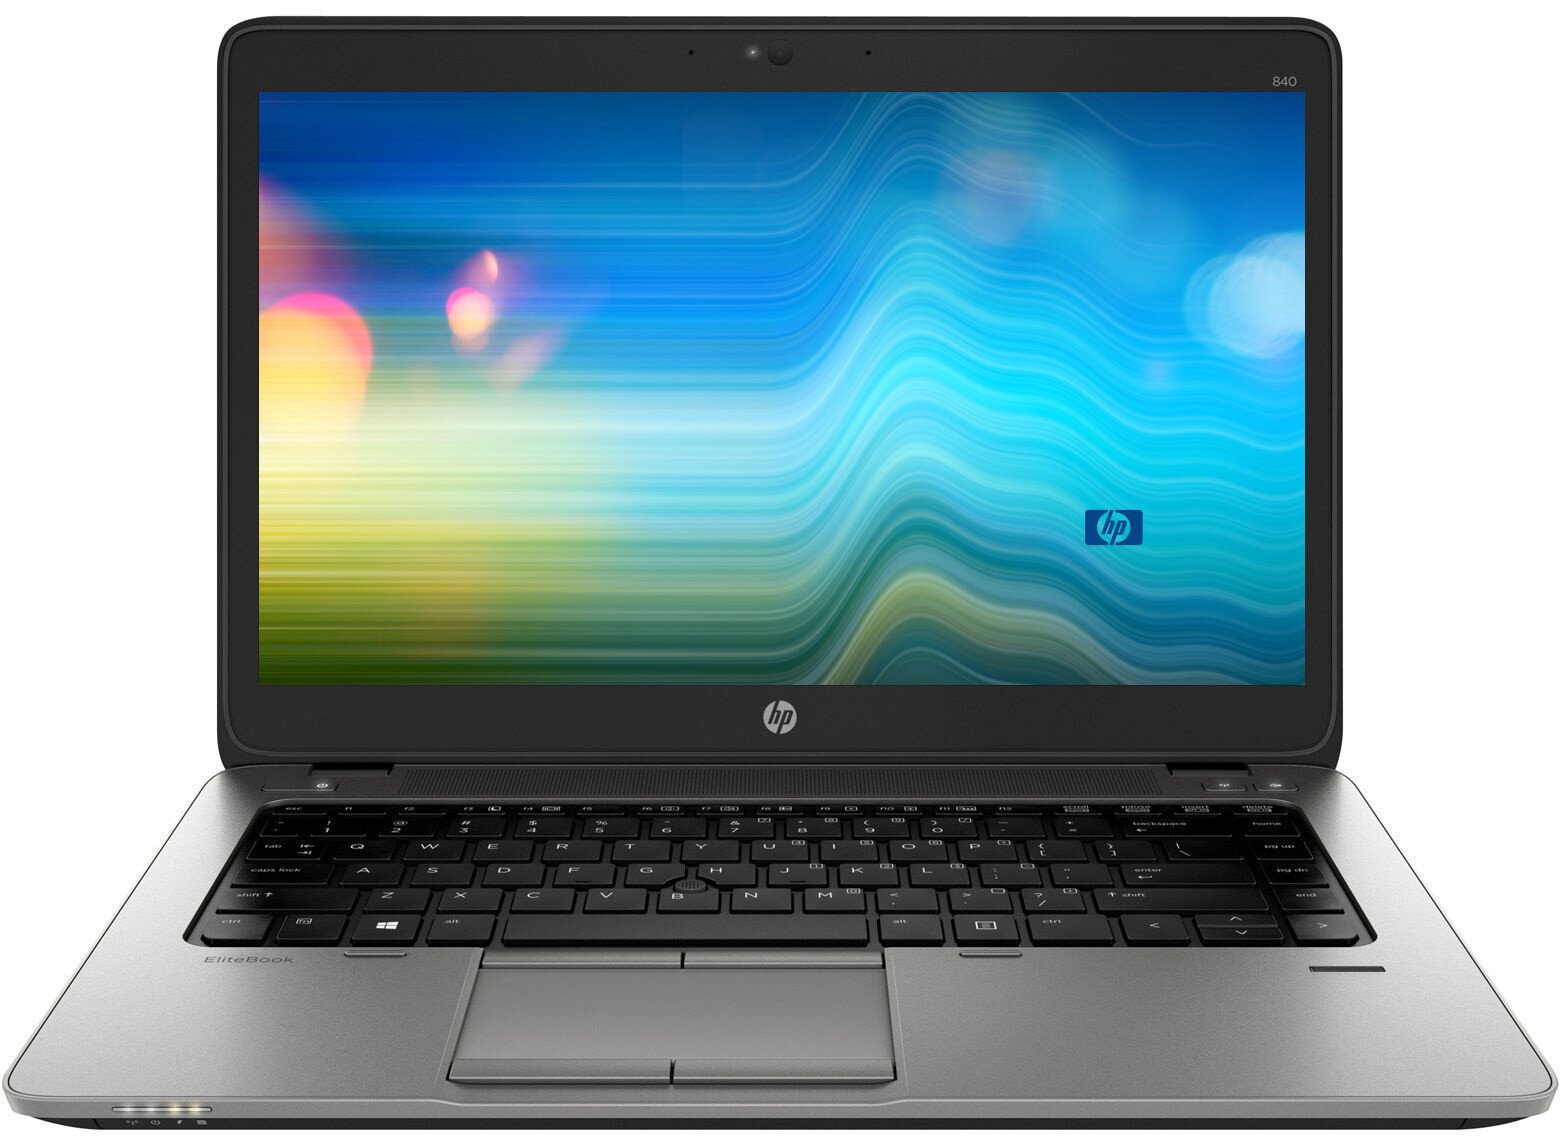 14" HP 840 G2 i5-5300U 8GB 240GB SSD Windows 10 Professional